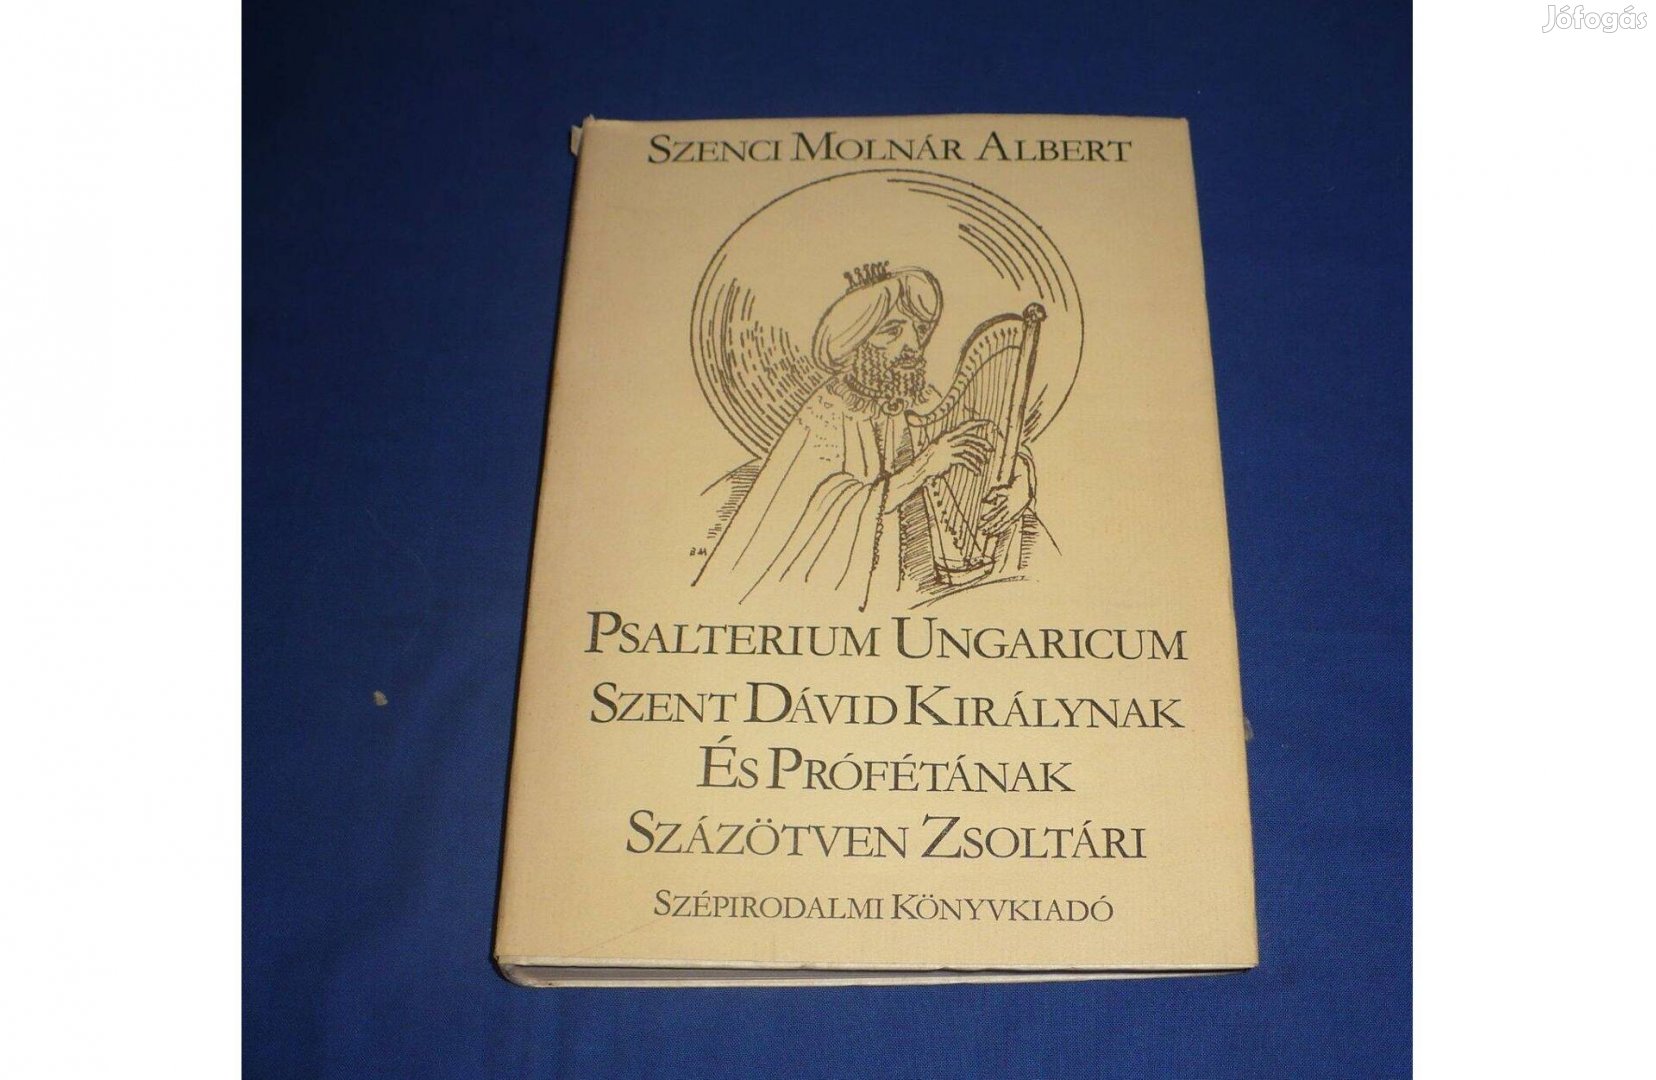 Szenczi Molnár Albert: Szent Dávid királynak és prófétának százötven